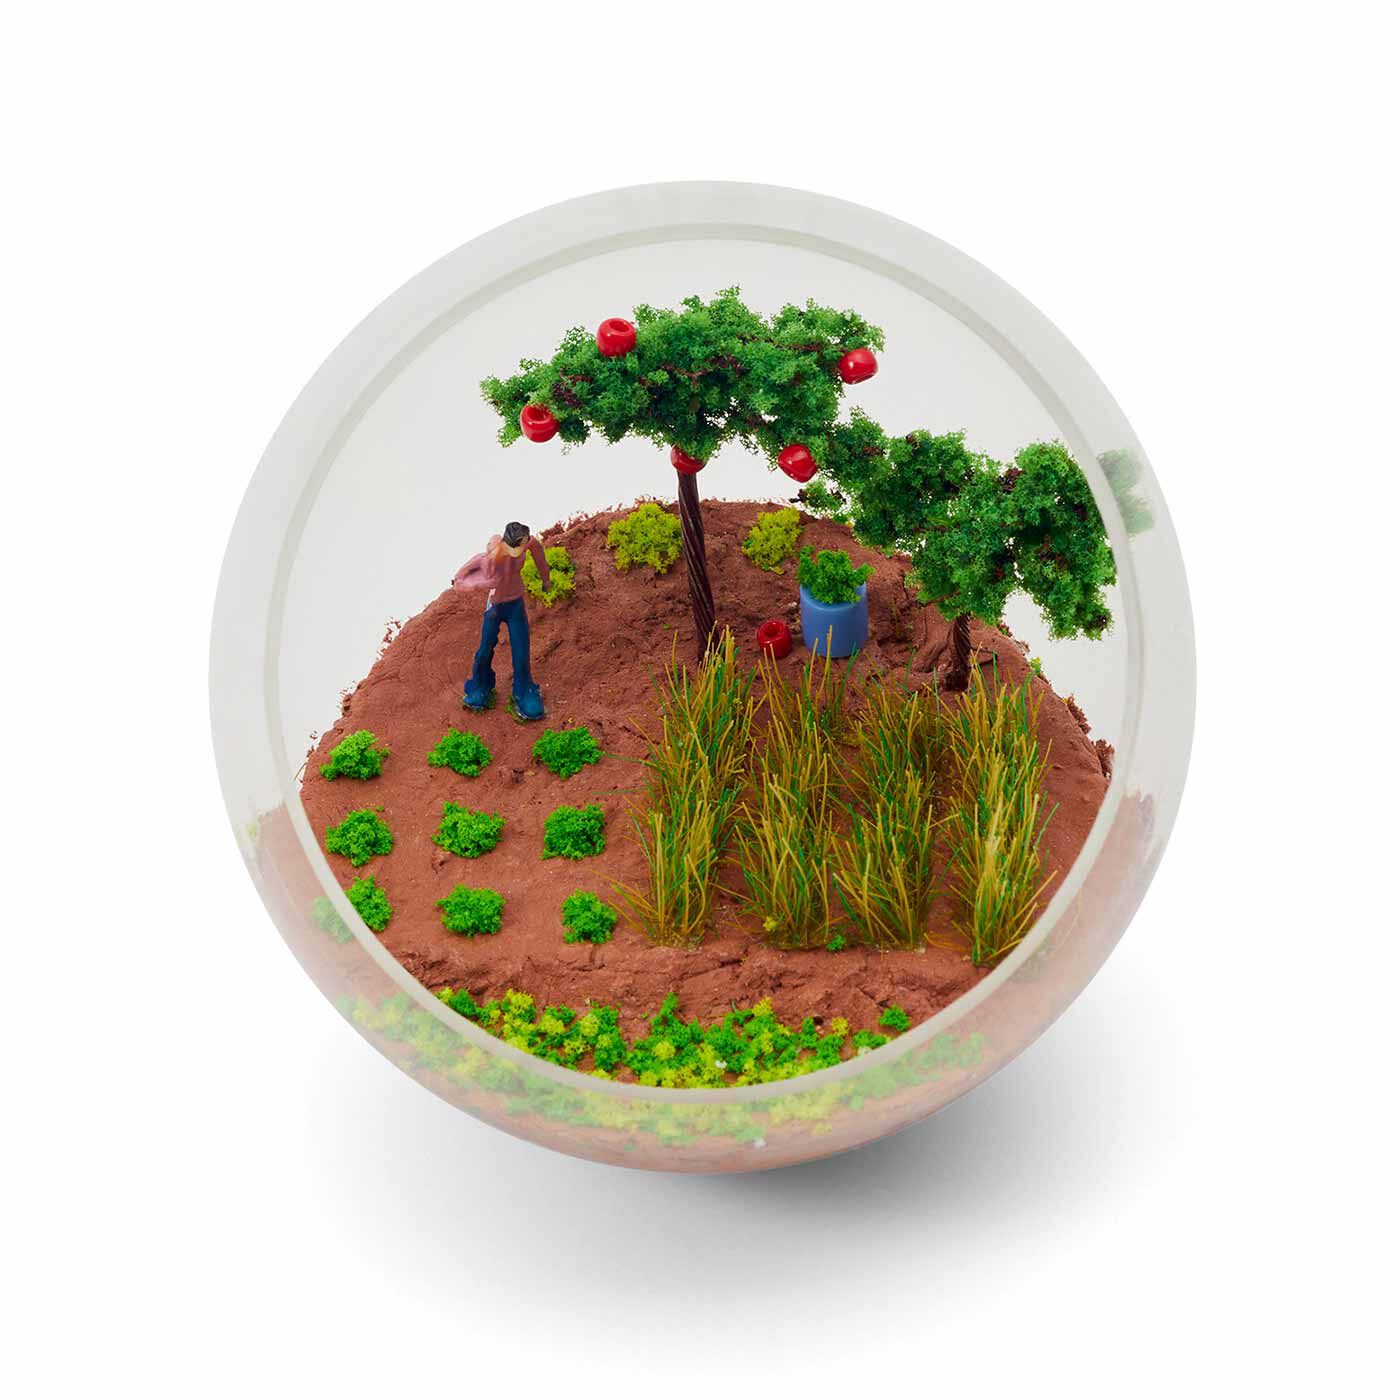 クチュリエ|手のひらサイズの小さなオアシス 草木の模型パーツで作るジオラマテラリウムの会|〈楽しみな収穫日〉